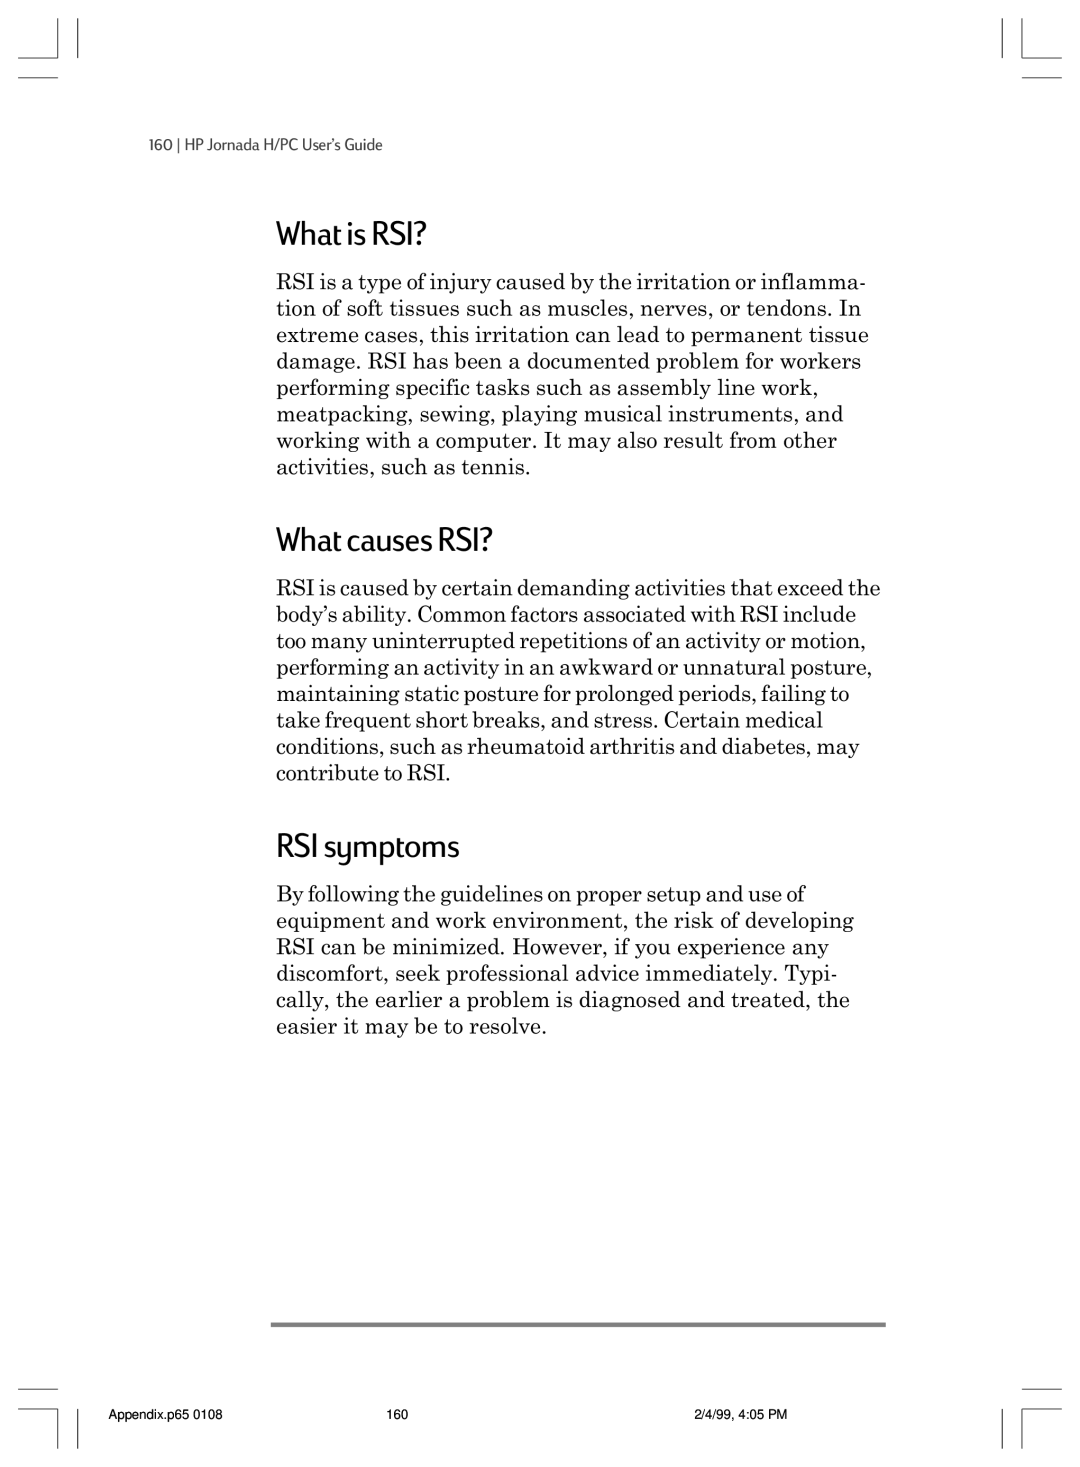 HP 820 E manual What is RSI?, What causes RSI?, RSI symptoms, HP Jornada H/PC UserÕs Guide 